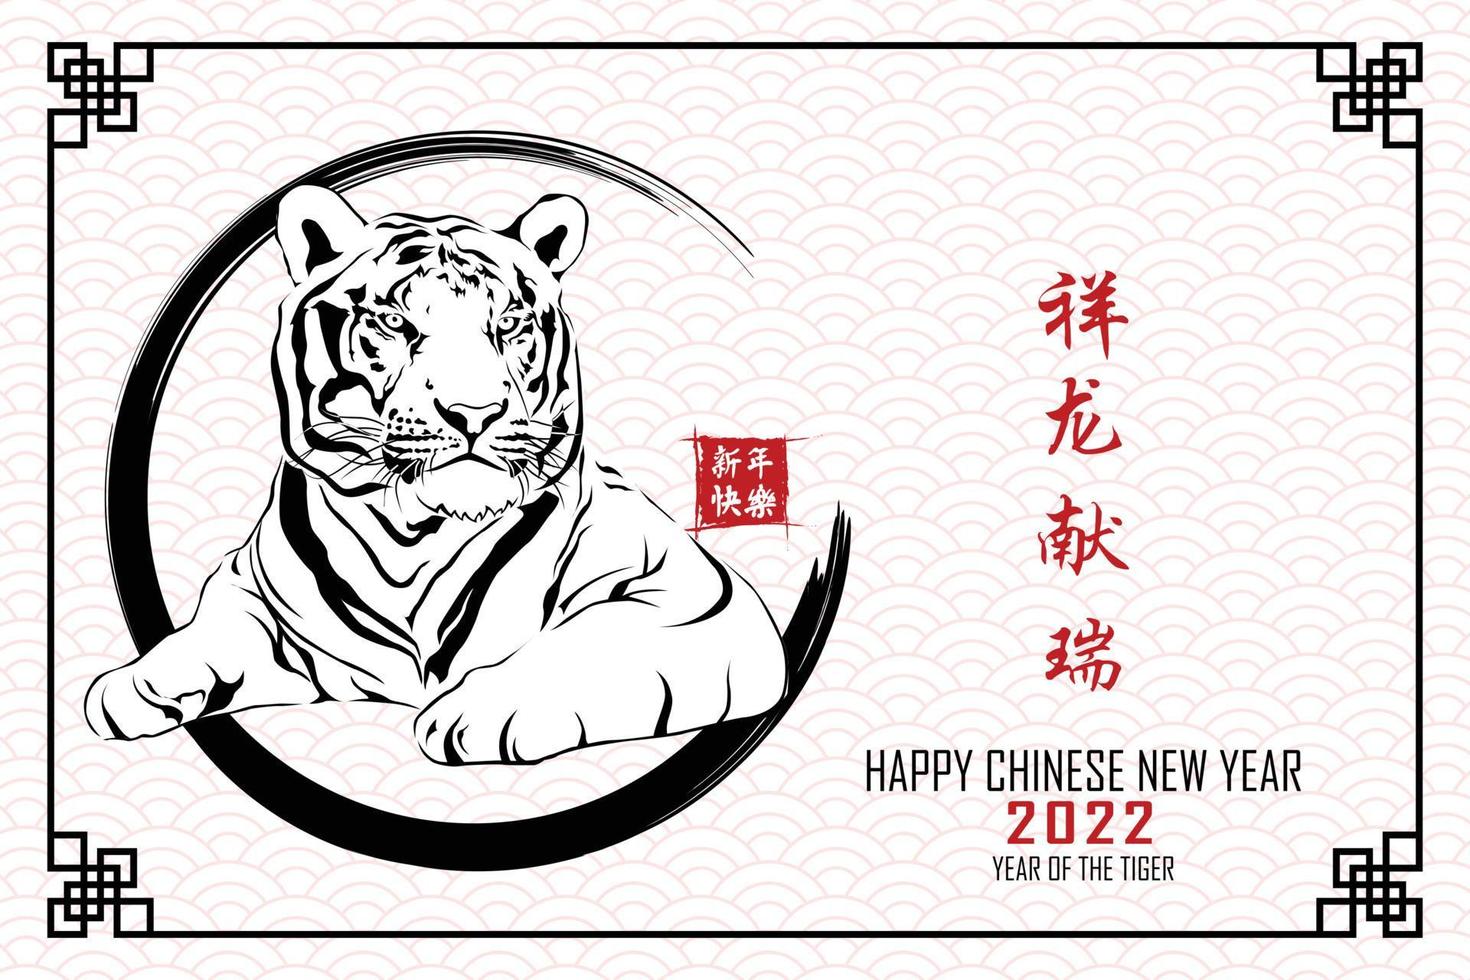 ano novo chinês 2022, ano do tigre com cabeça de tigre vermelho deitado no quadro de círculo padrão chinês isolado no fundo branco. tradução de texto em chinês feliz ano novo 2022, ano do tigre vetor